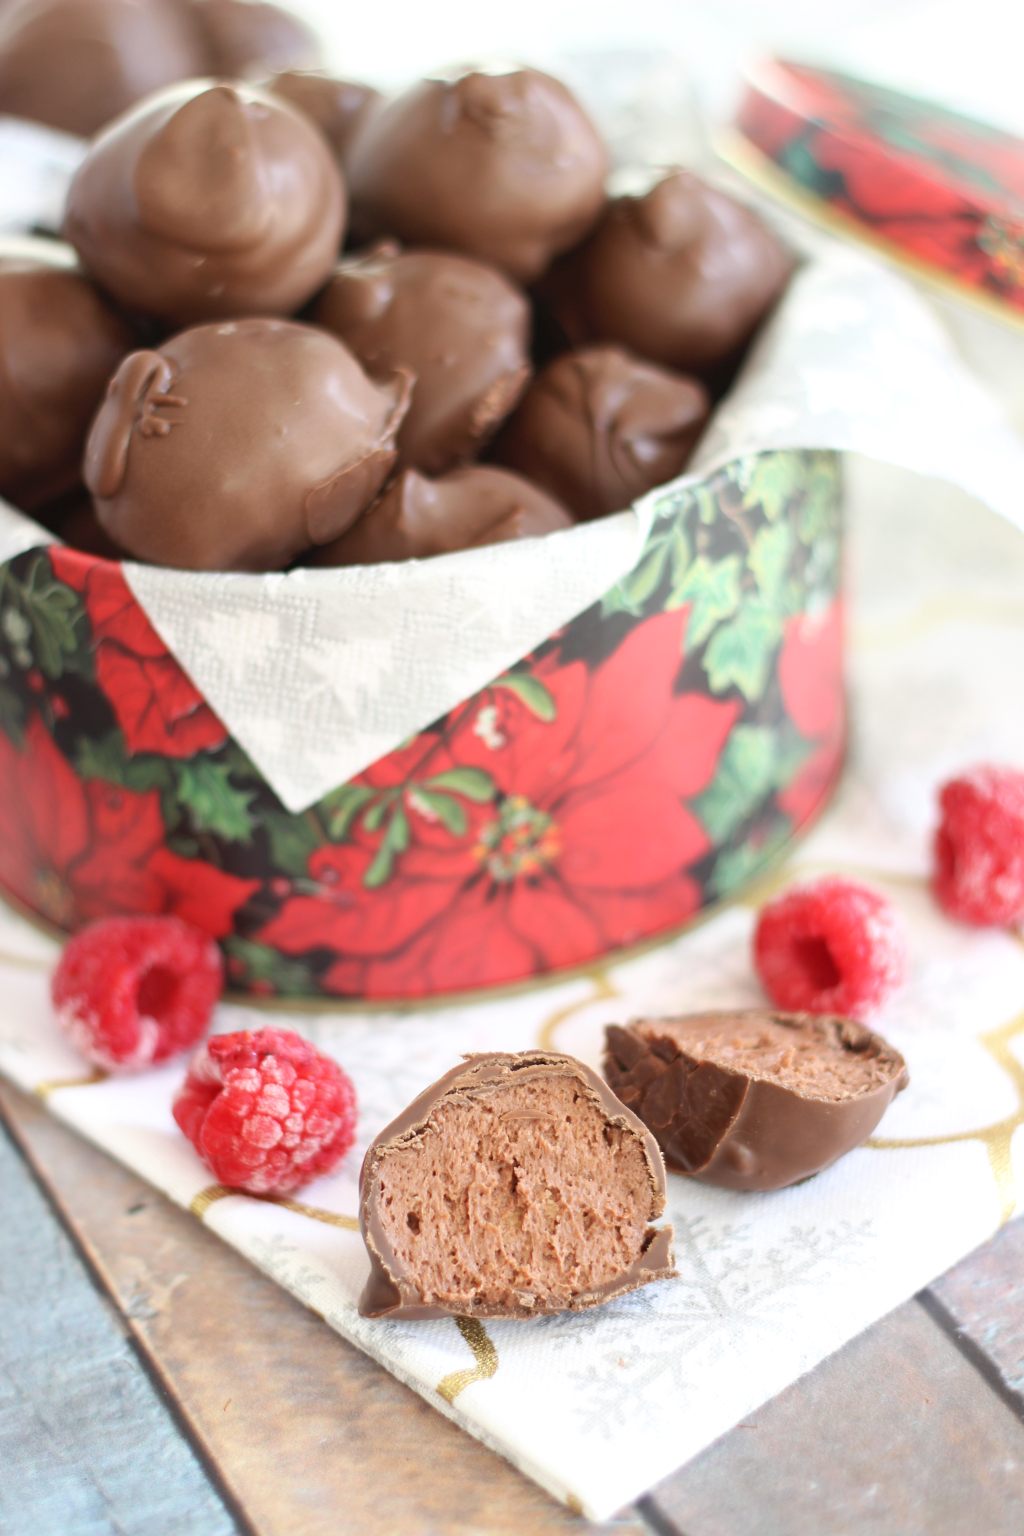 http://thegoldlininggirl.com/wp-content/uploads/2016/01/chocolate-raspberry-cheesecake-truffles-9.jpg